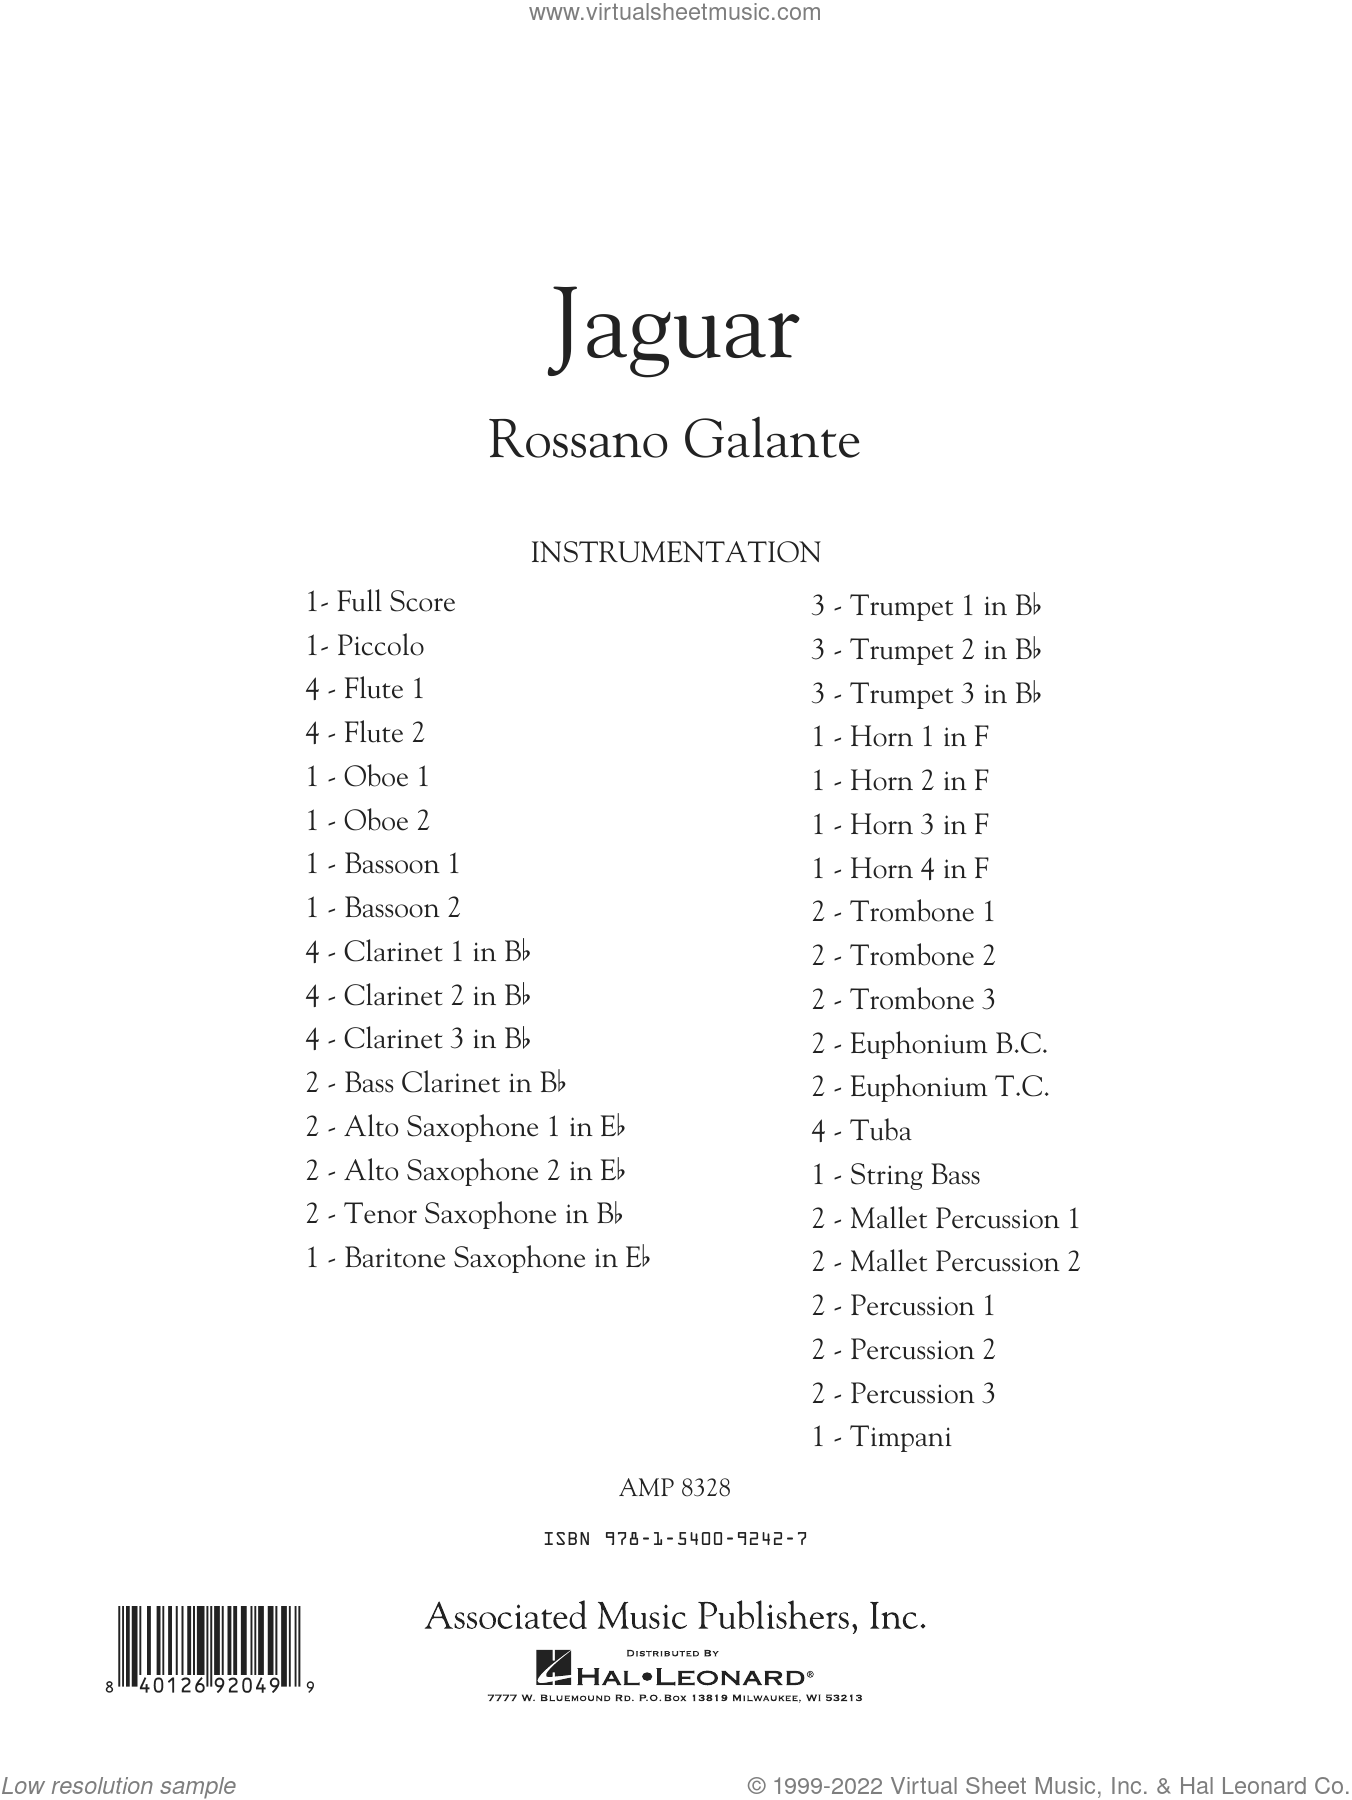 jaguar scores